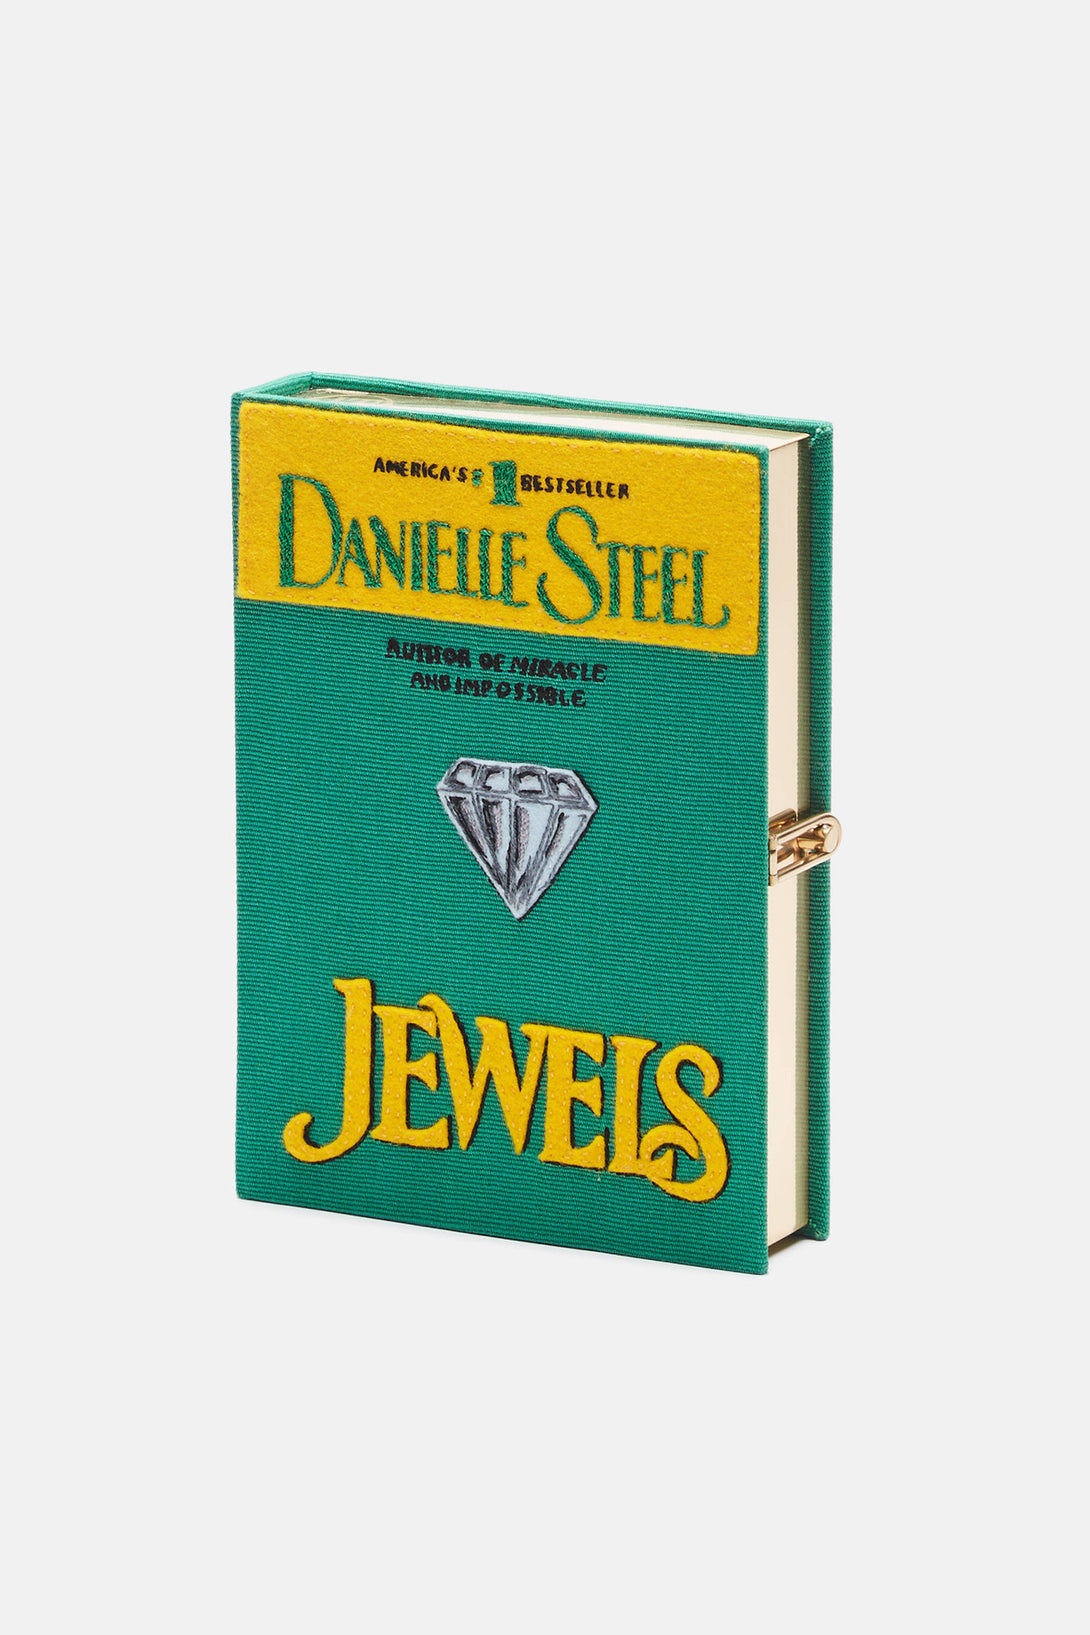 danielle steel könyvek letöltése ingyen pdf 2018